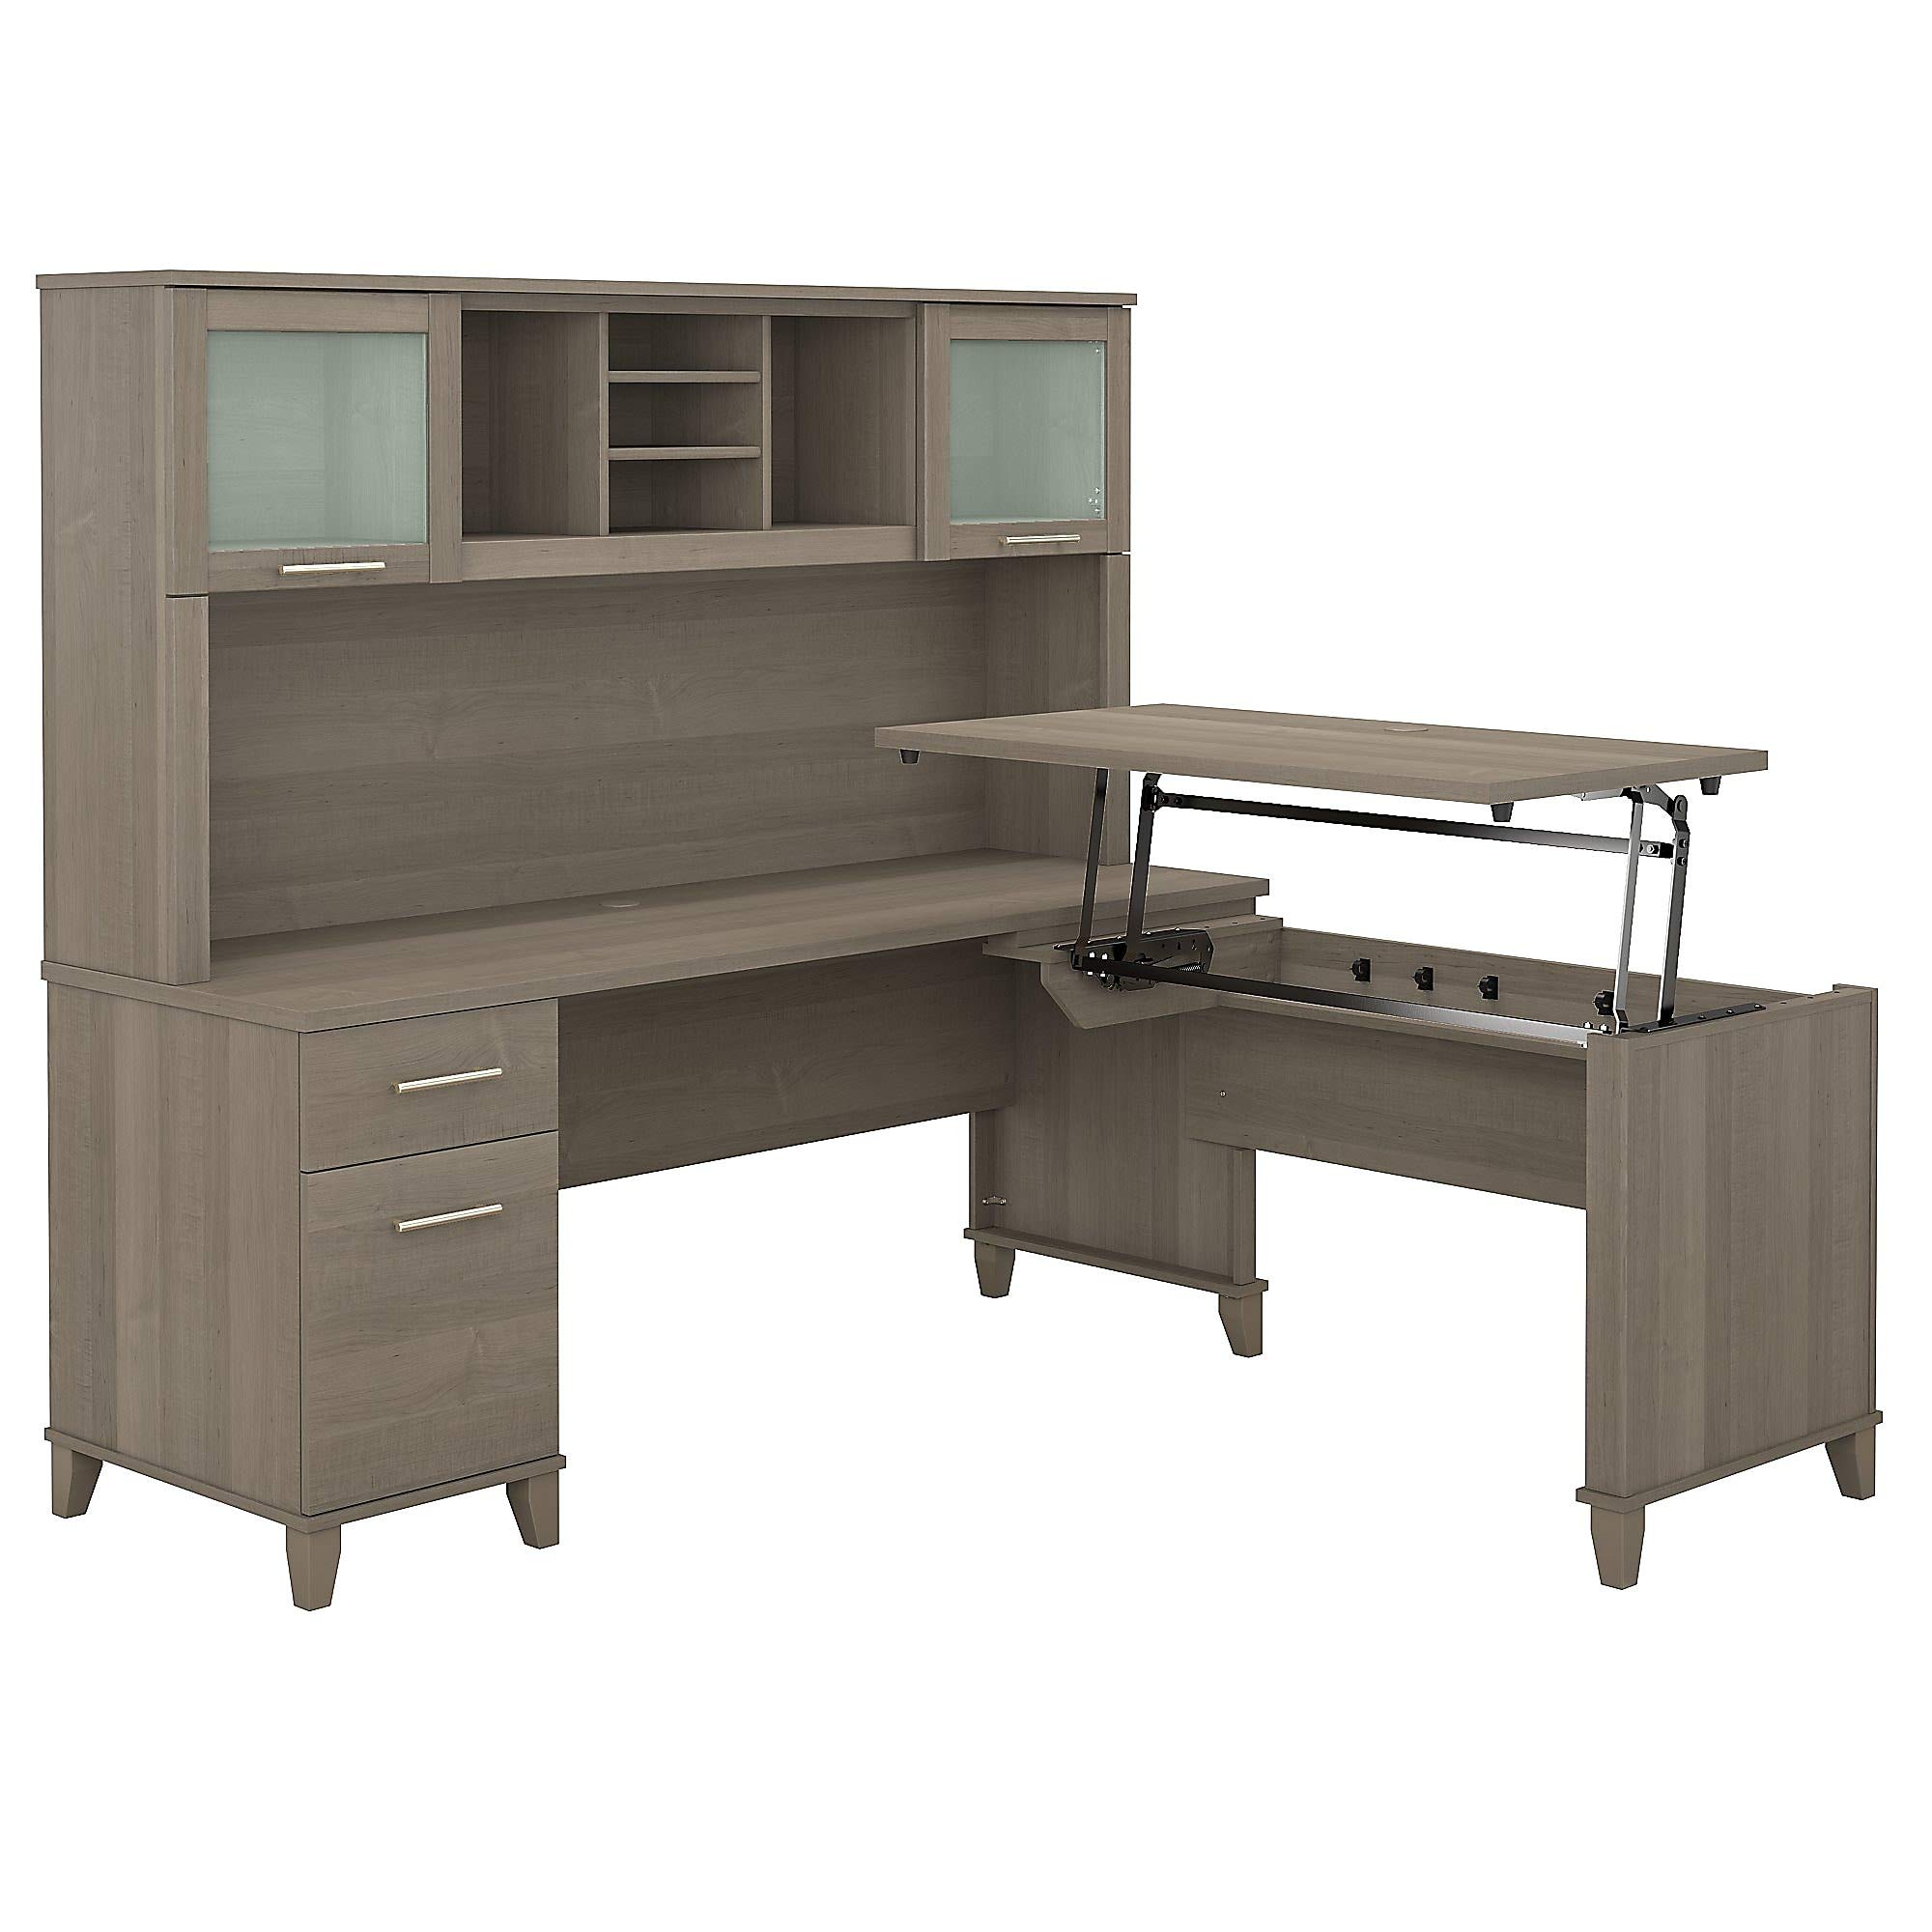 Bush Furniture Somerset 3-Positionen-Sitz-Steh-L-förmiger Schreibtisch mit Hutch